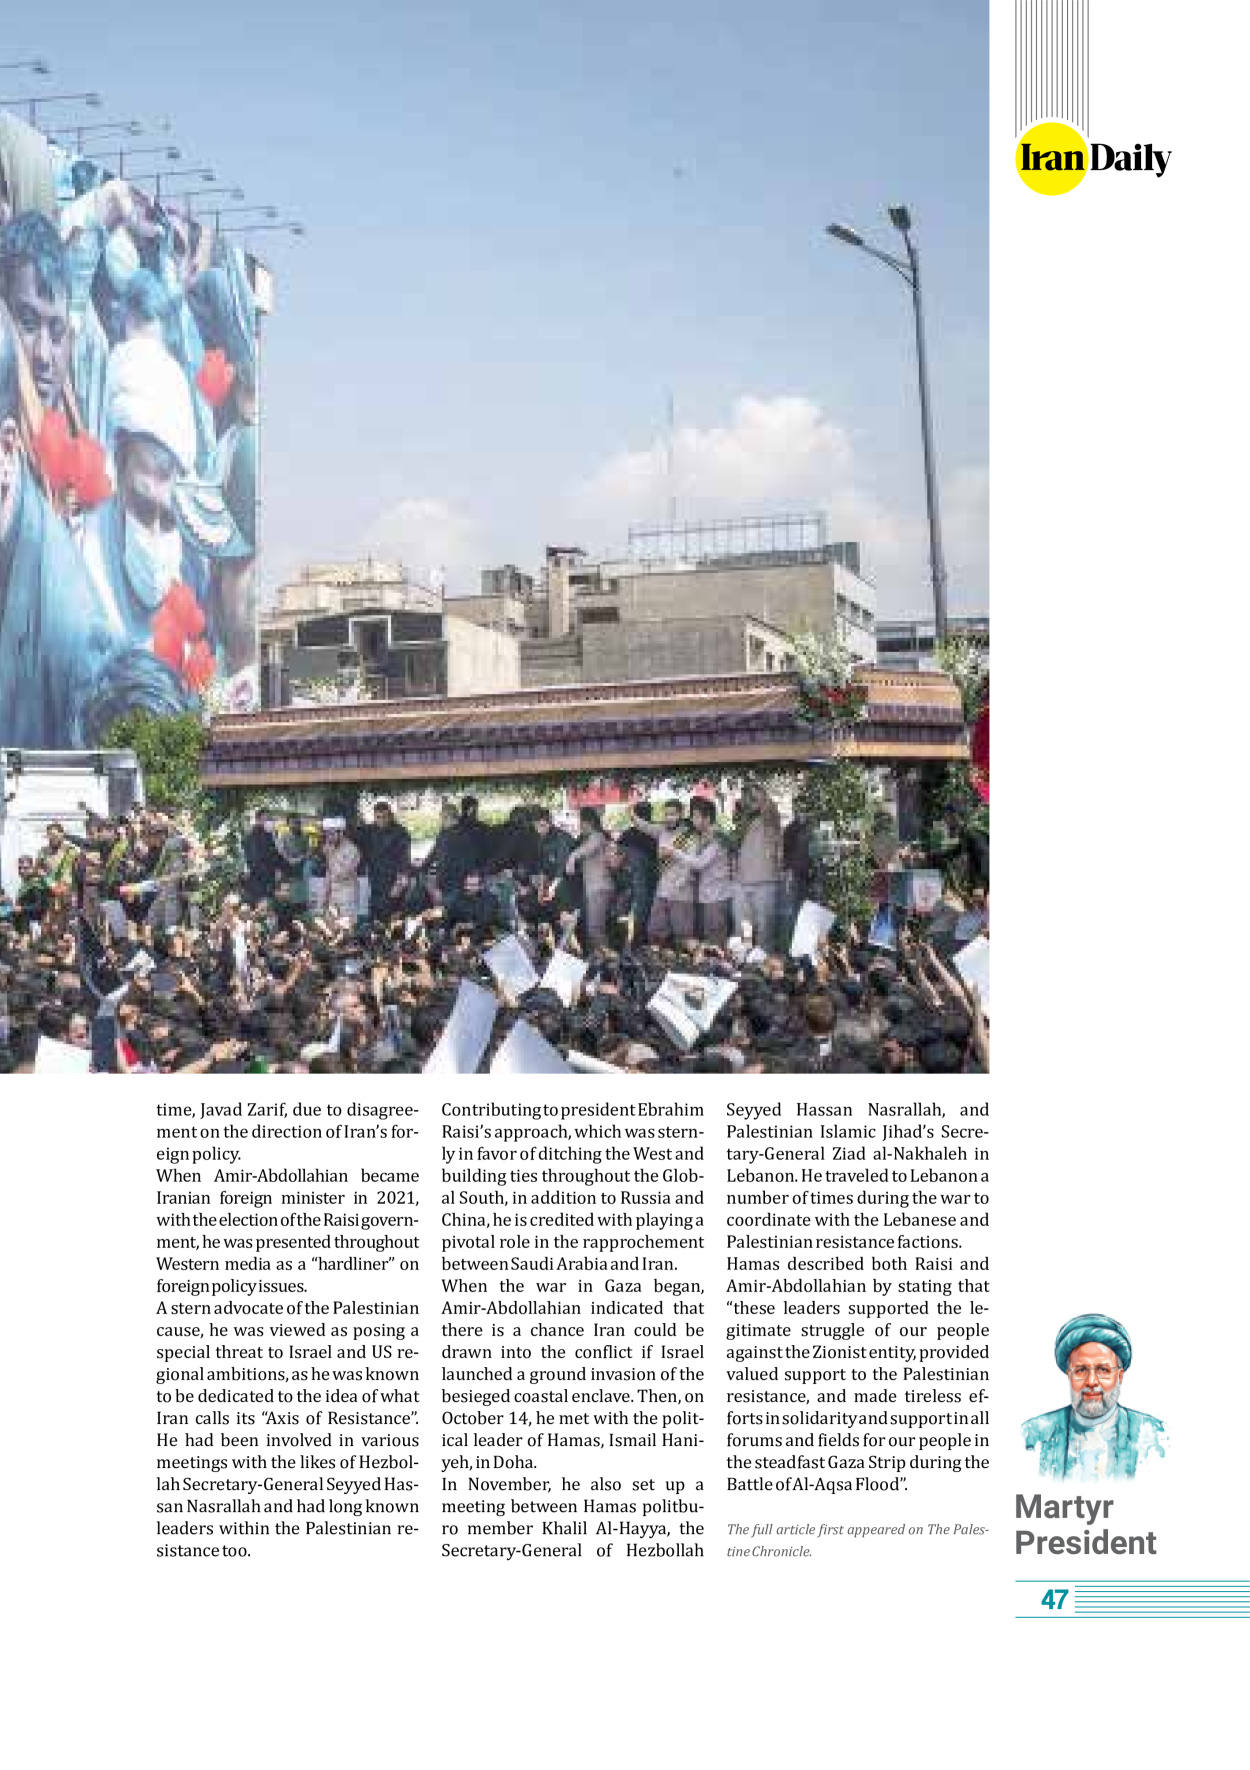 روزنامه ایران - ویژه نامه وِزه نامه چهلم شهید رییسی( انگلیسی) - ۱۷ تیر ۱۴۰۳ - صفحه ۴۷